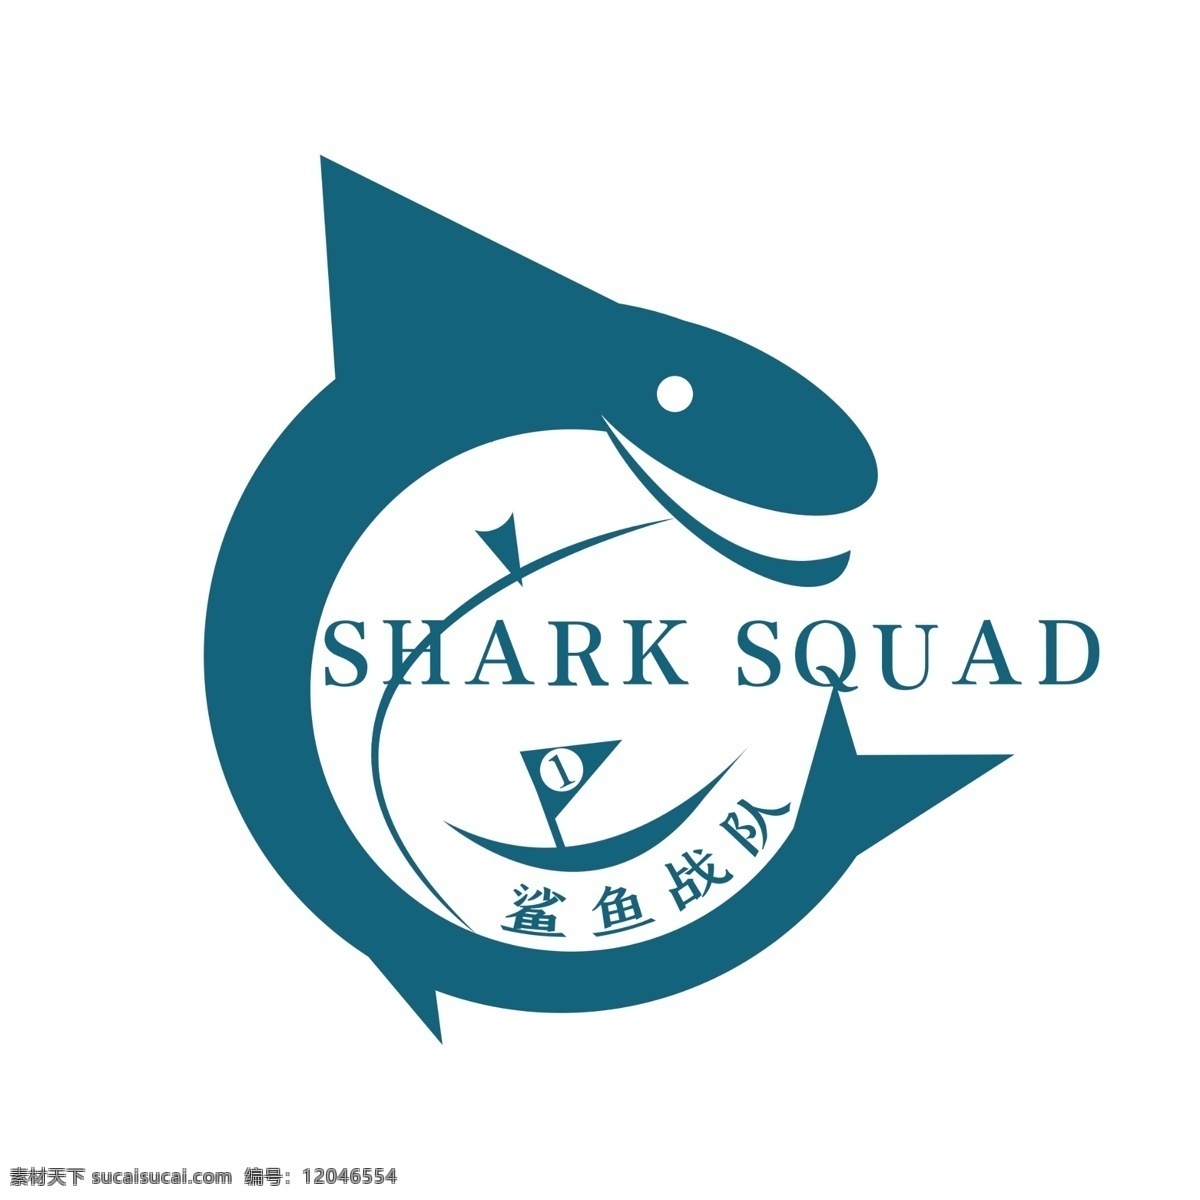 鲨鱼 电 竞 战队 logo logo设计 电竞 动物logo 简约 鲨鱼战队